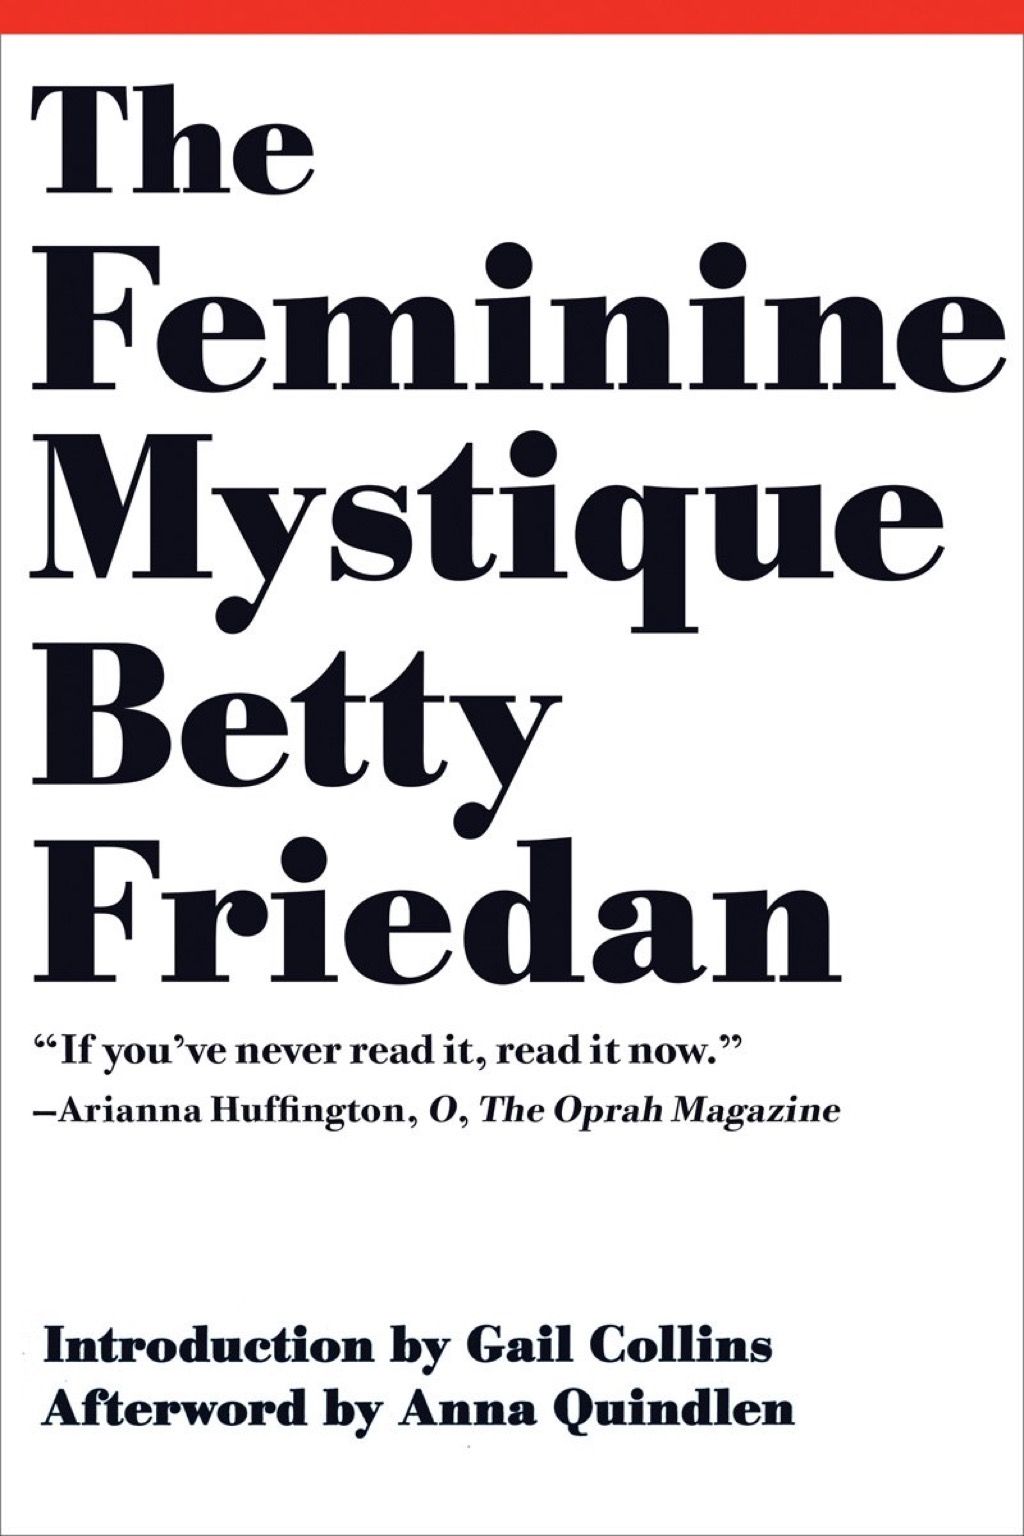 A Feminine Mystique könyveket minden nőnek el kell olvasnia a 40-es éveiben